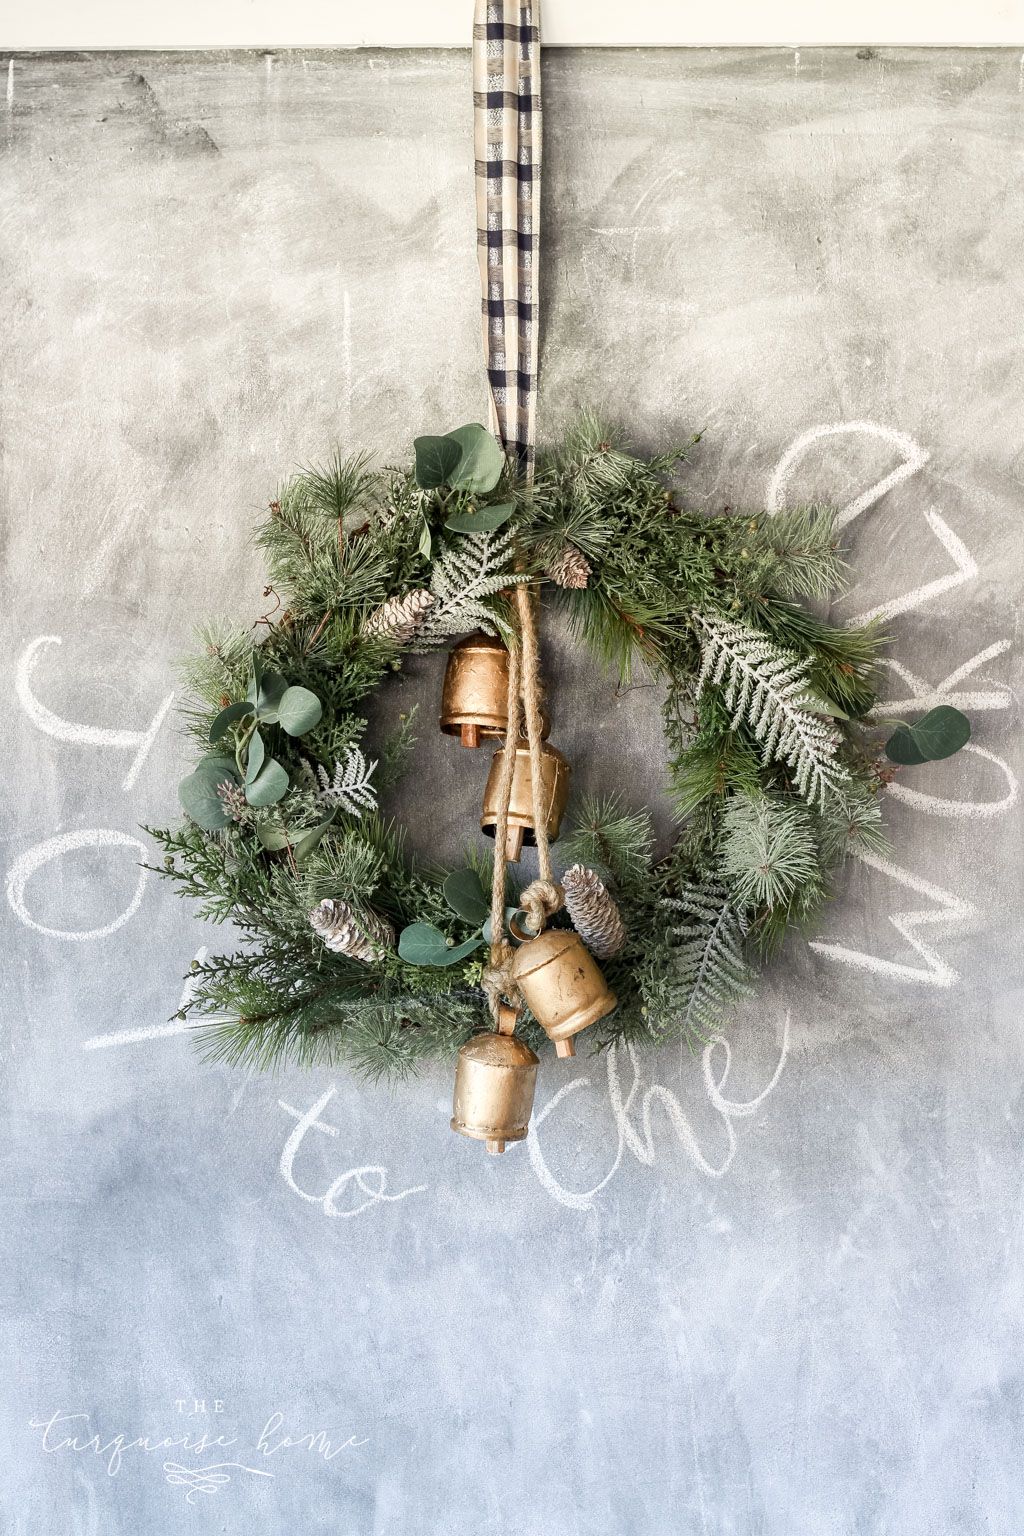 Christmas Wreath,Snowman Wreath,Front Door Wreaths,Christmas Decorations,Door Hanger,Holiday Wreaths,Winter wreath,Wreaths